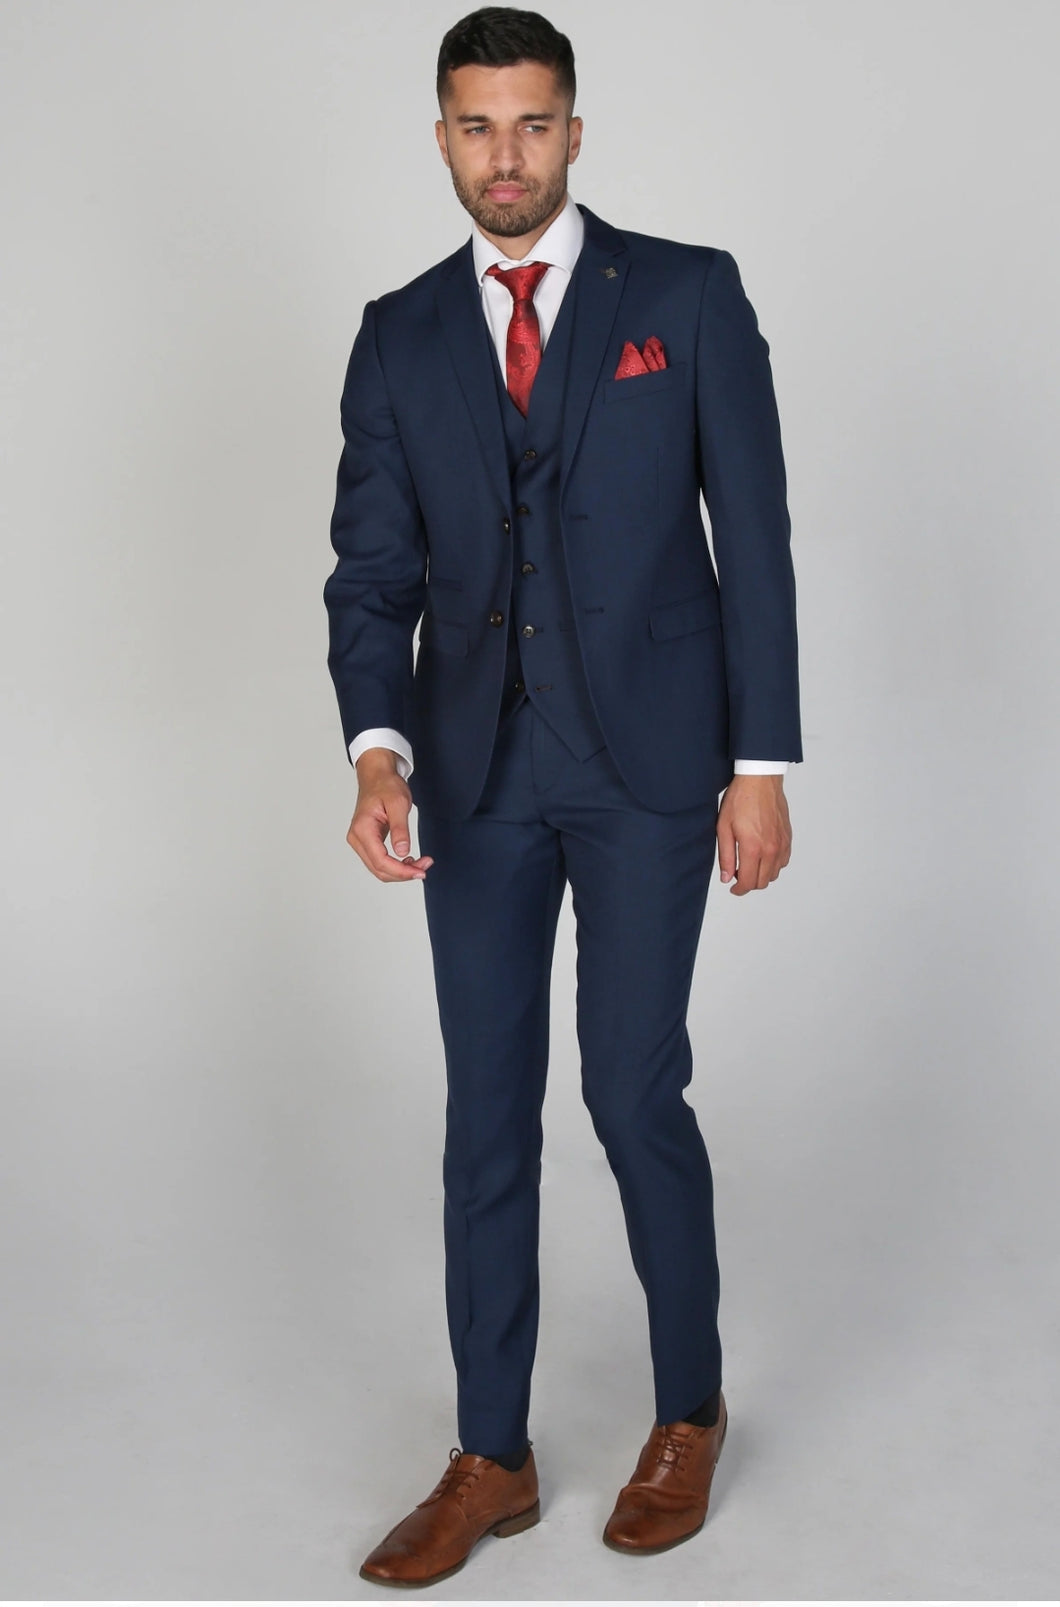 Calvin Blue 3 Piece suit for hire